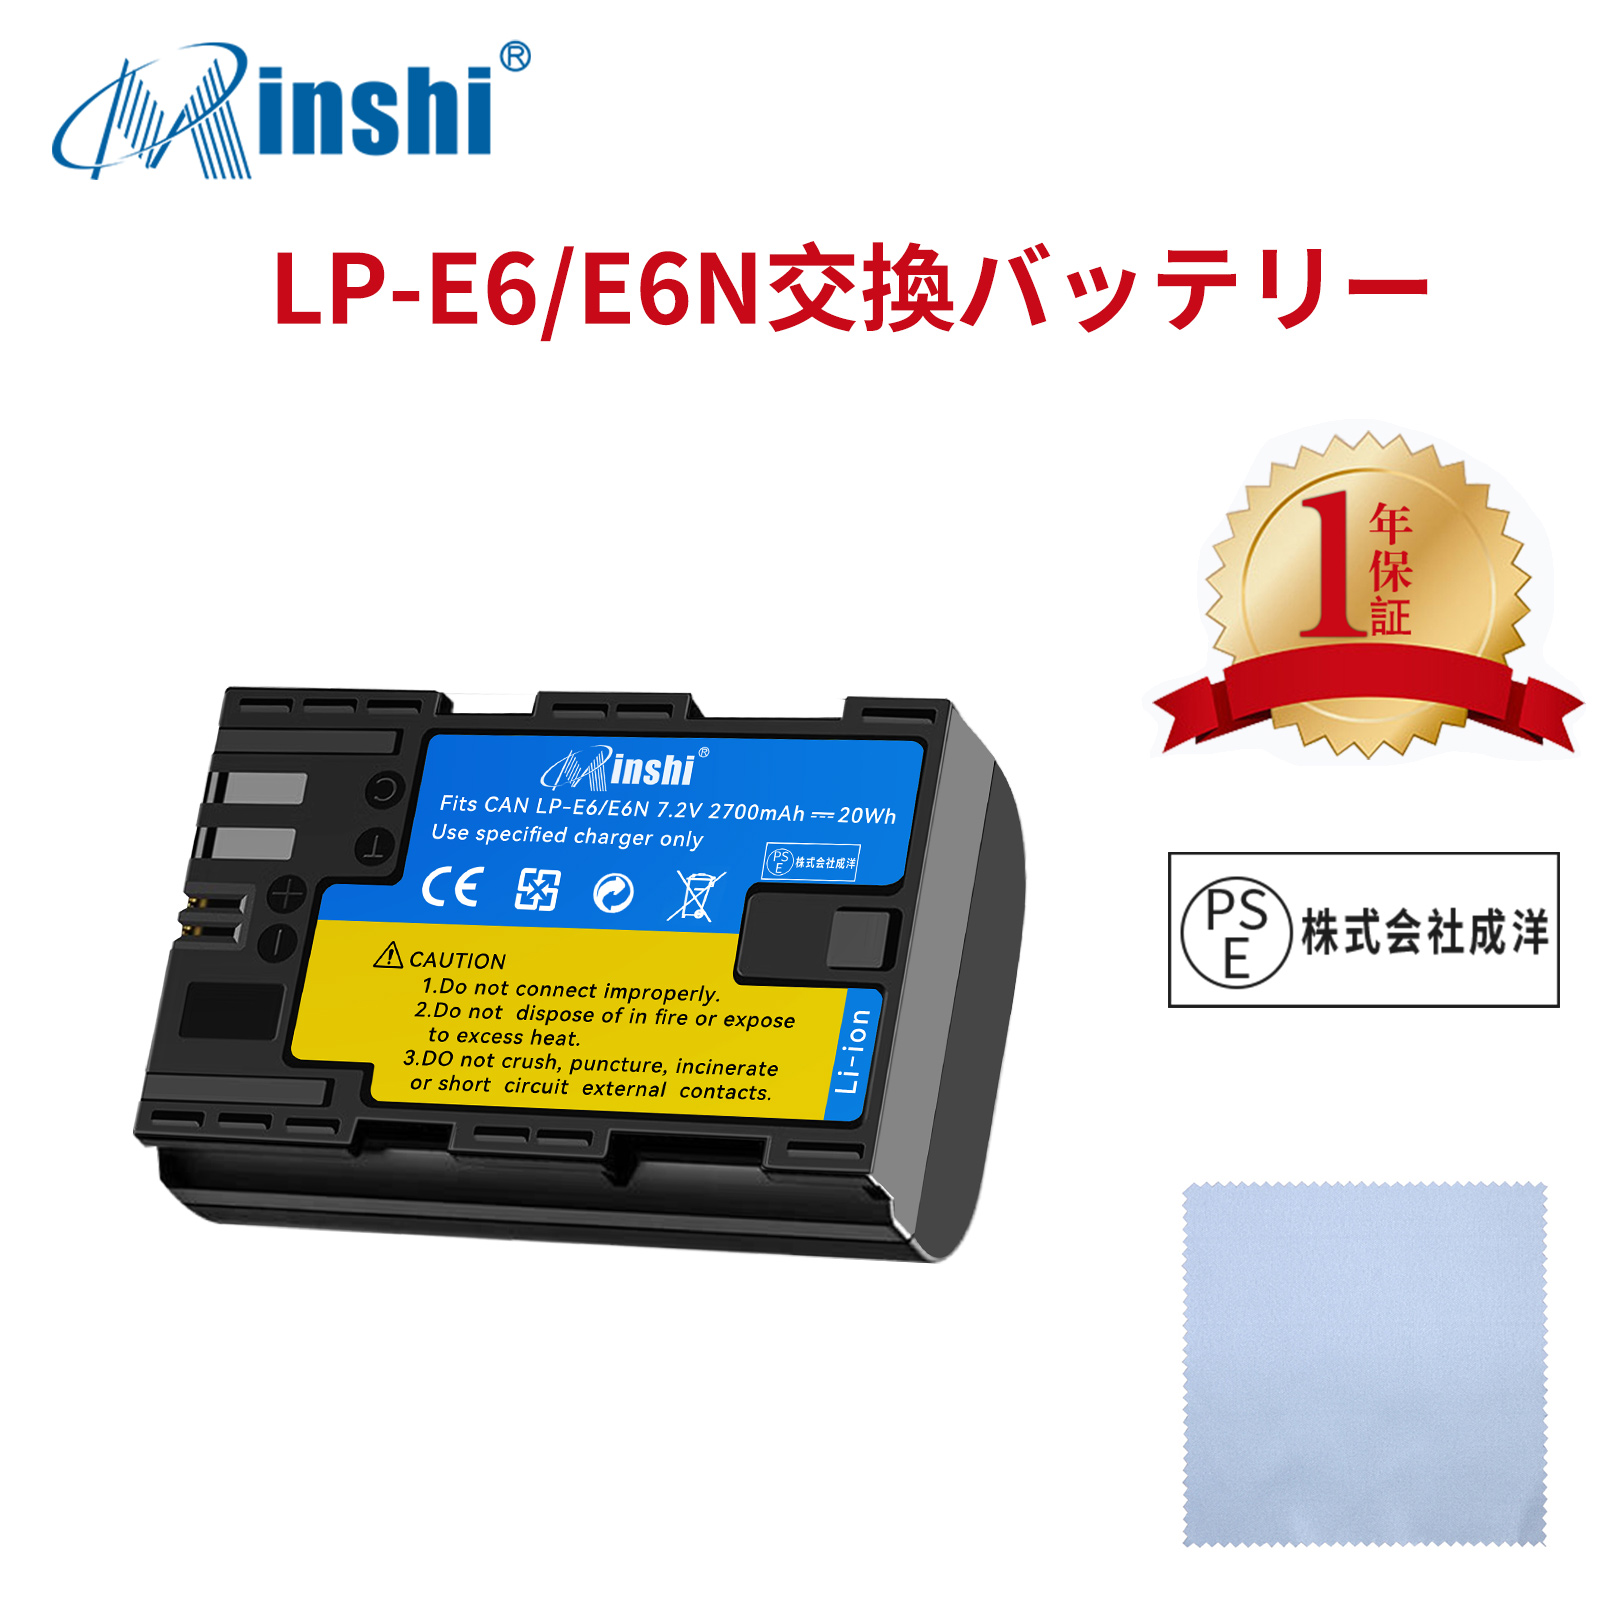 【清潔布ー付】minshi Canon LP-E6 EOS 6D  LP-E6 LP-E6NH LP-E6N EOS6D CANON 80D 【2700mAh 7.2V 】高品質交換用バッテリー